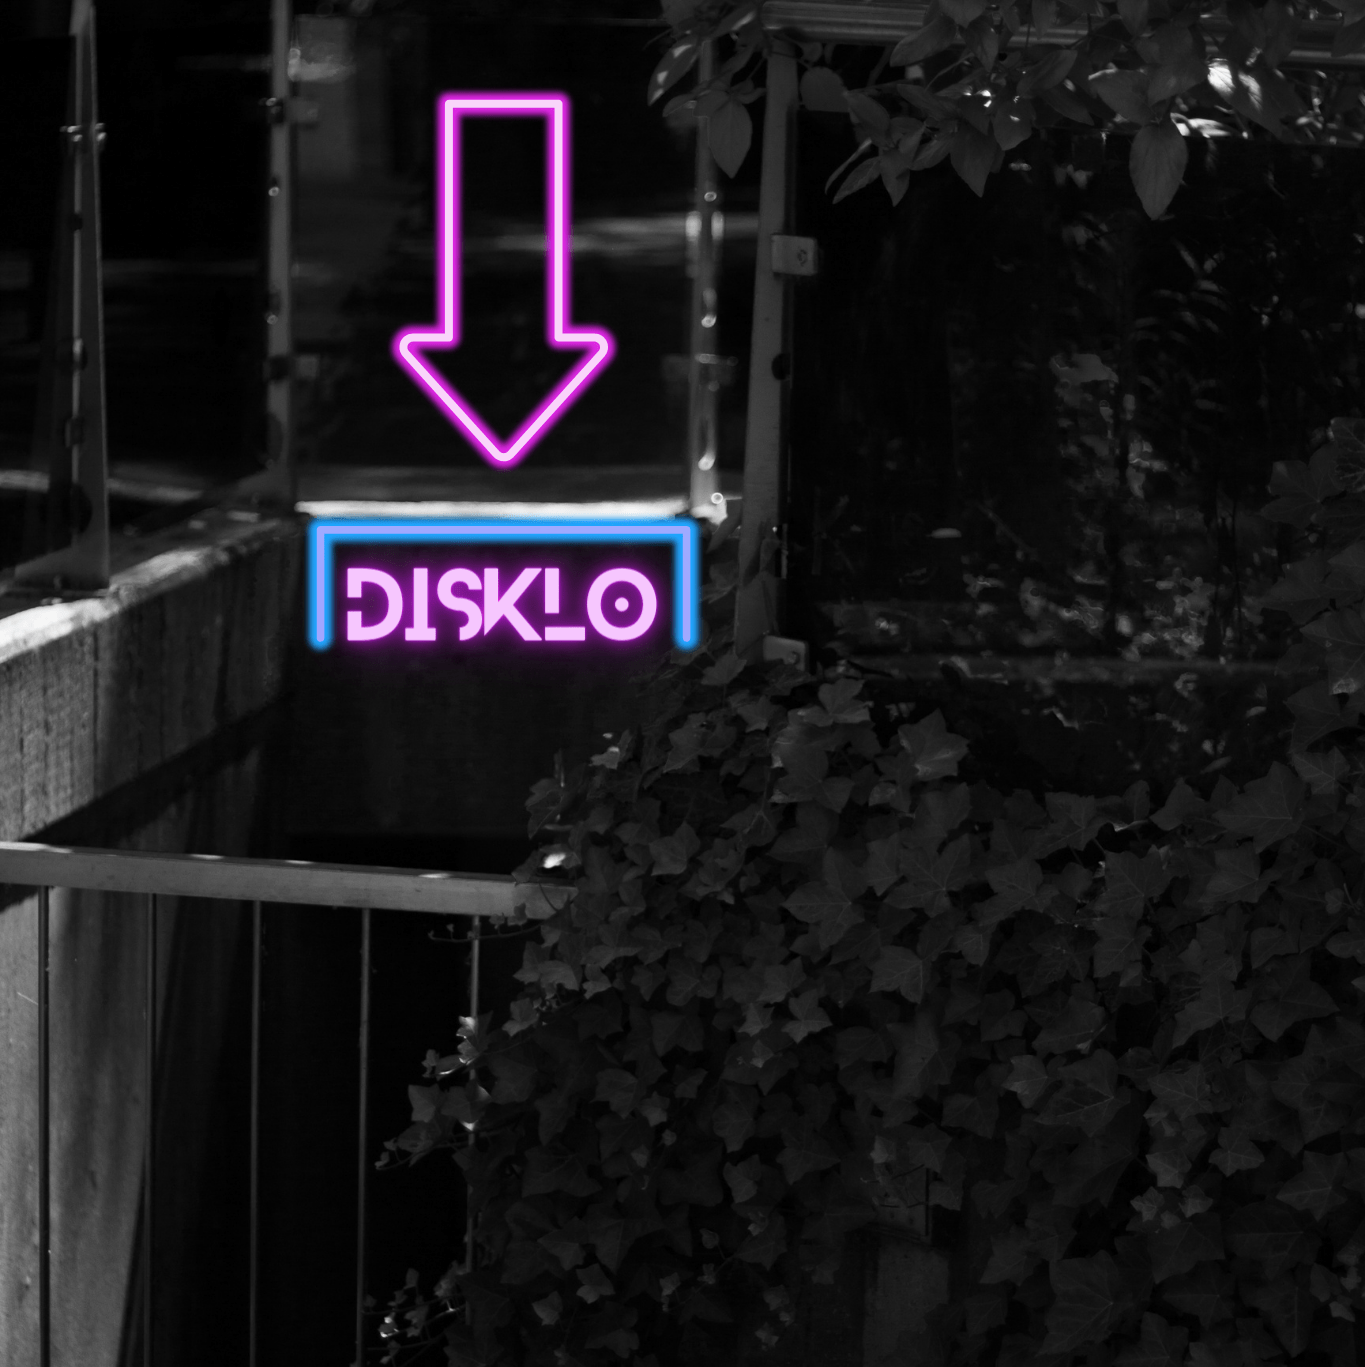 Schwarz-weiß Fotografie eines Treppenabgangs. Nur ein lila Neonschild mit dem Schriftzug "DISKLO" erhellt die Szenerie.